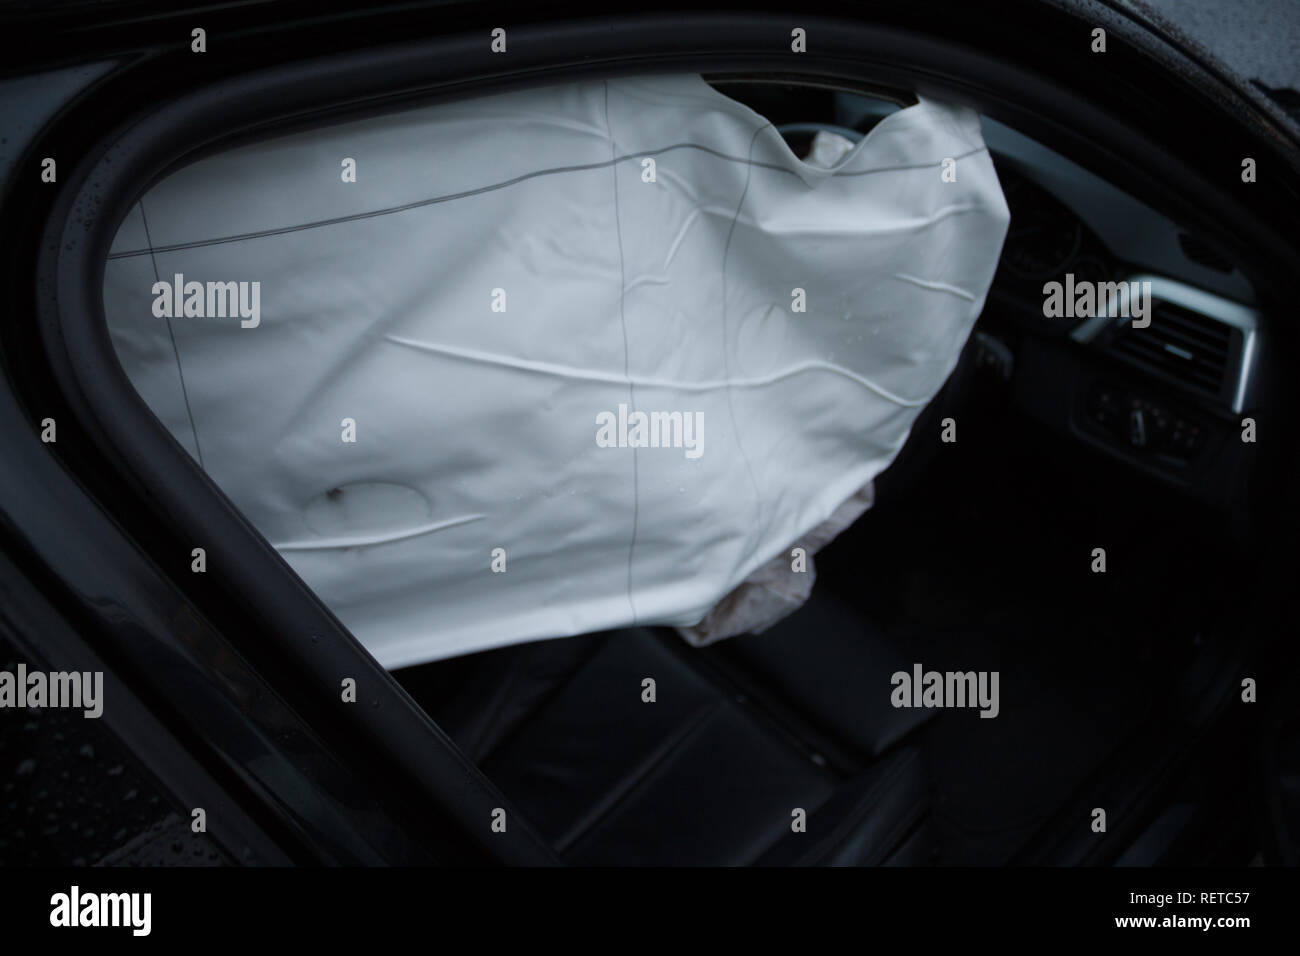 Car crash / vehicle damage; Side airbag. Stock Photo